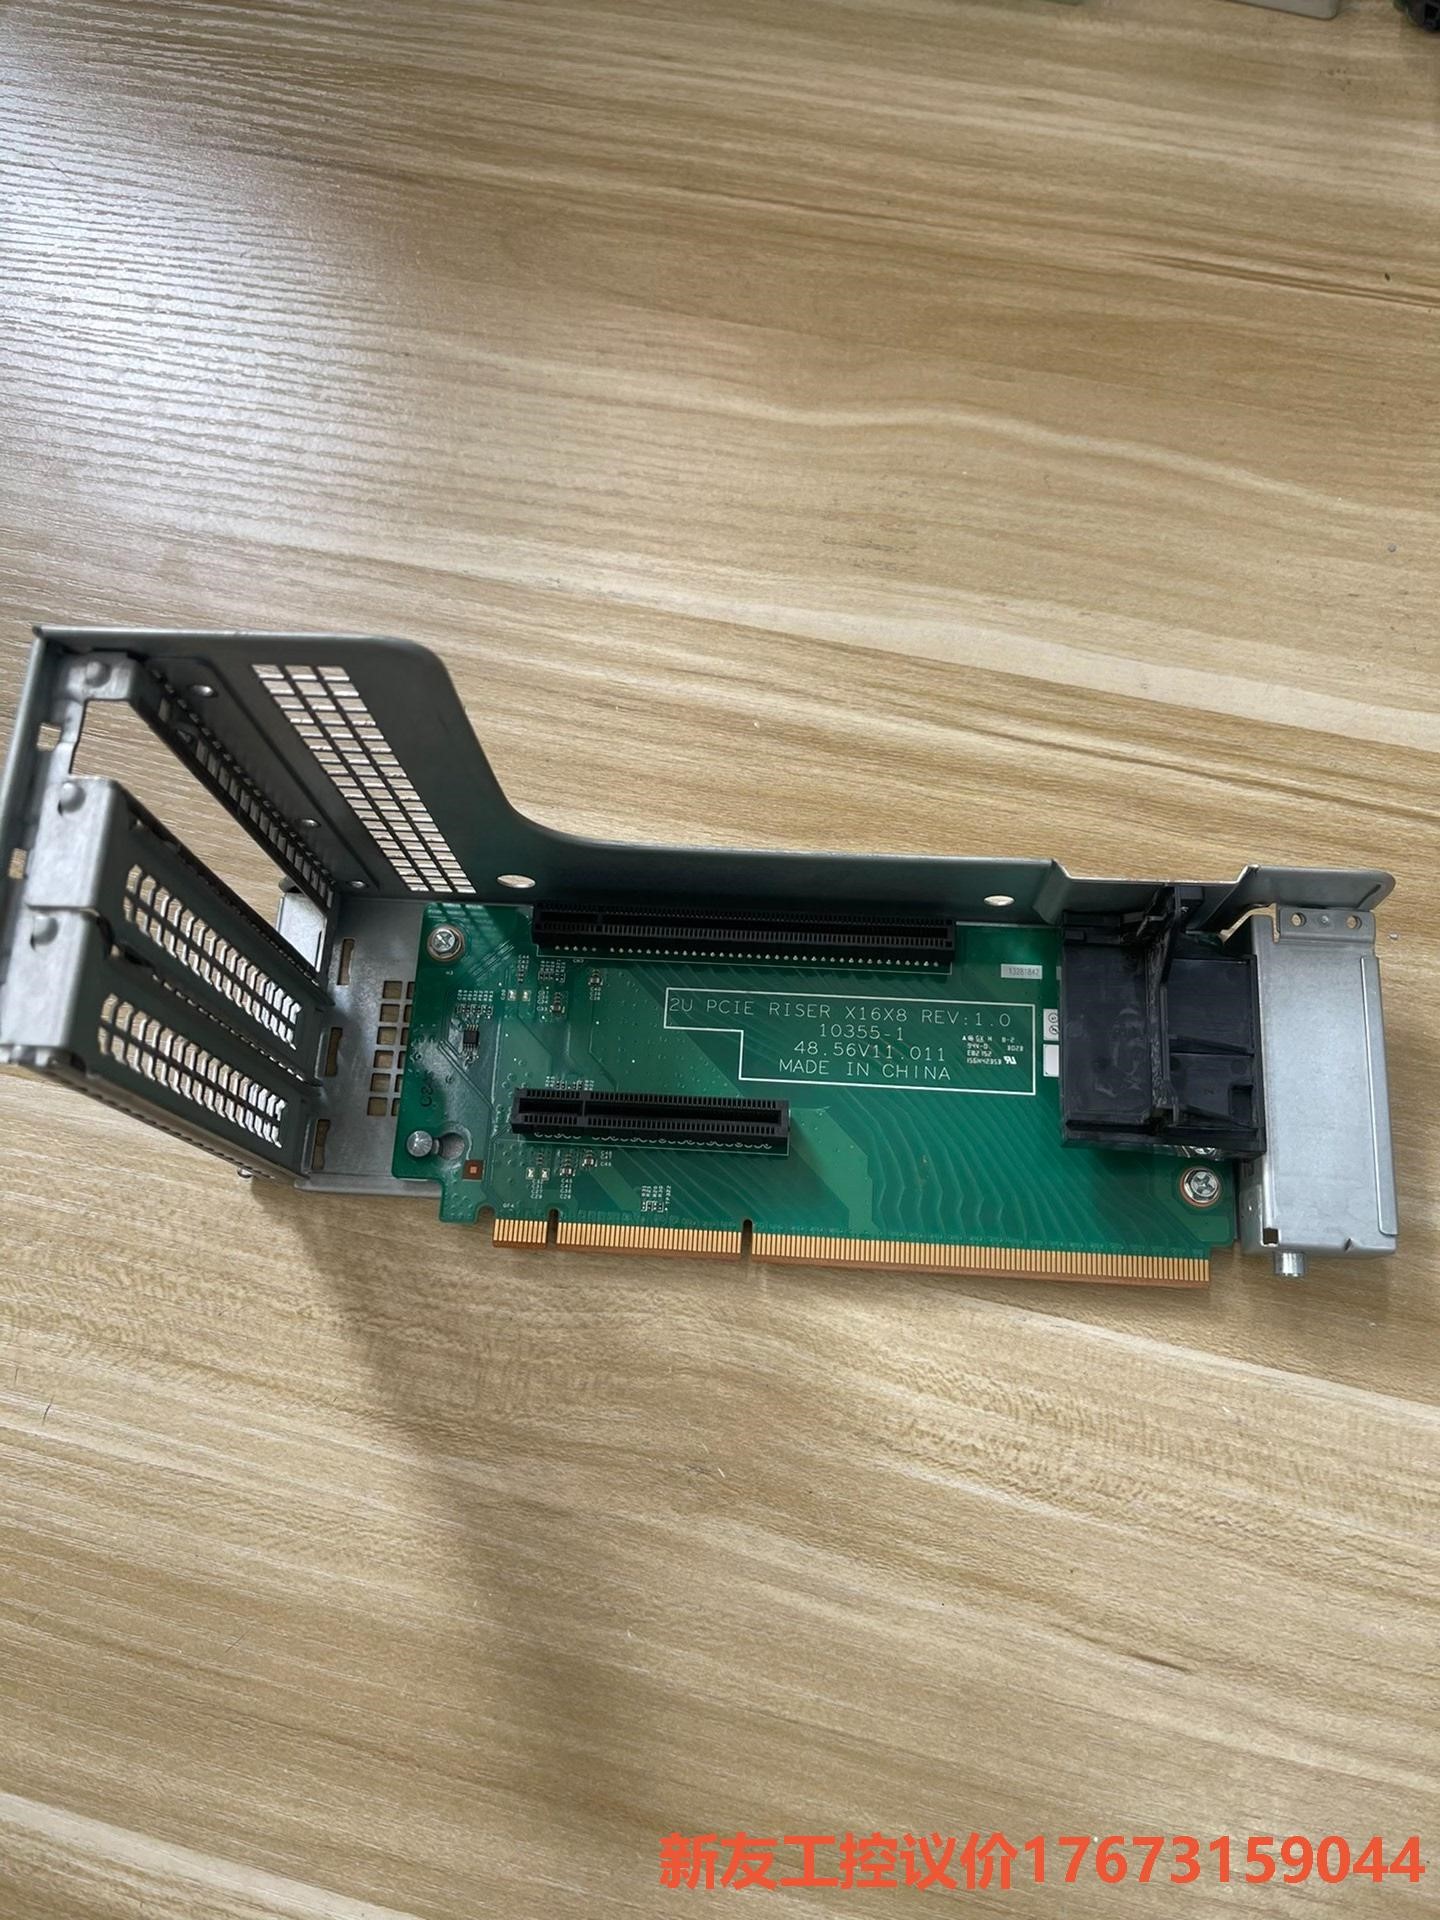 联想 RD430 440 RD630 640 PCI-E 提 议价-新友工控 电子元器件市场 其它元器件 原图主图